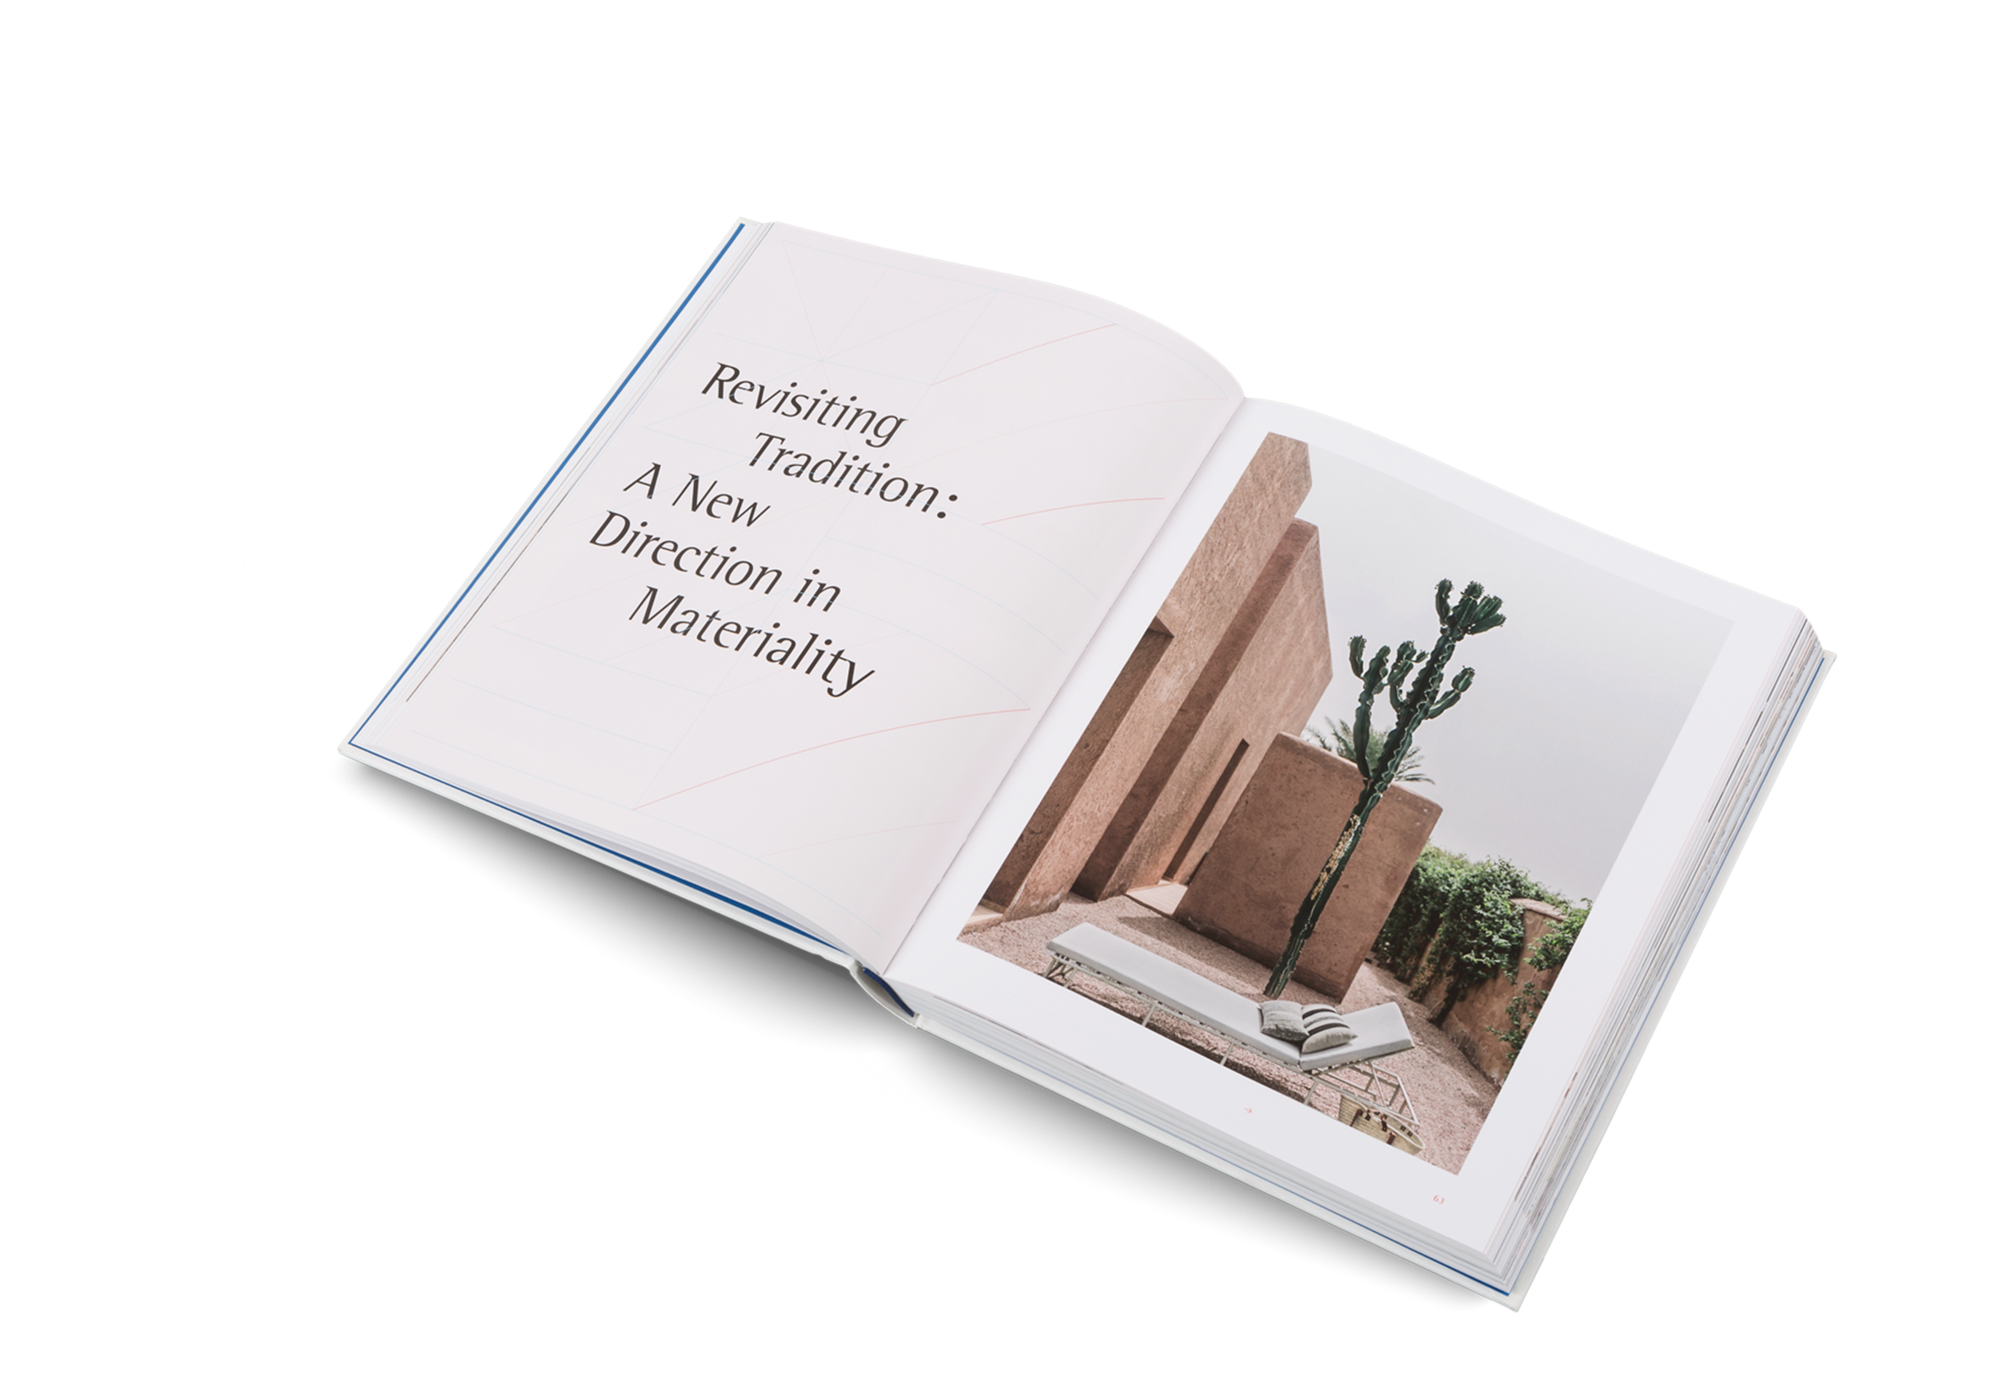 TheNewMediterranean_gestalten_book_mediterranean_design_interior_inside02_2000x.png